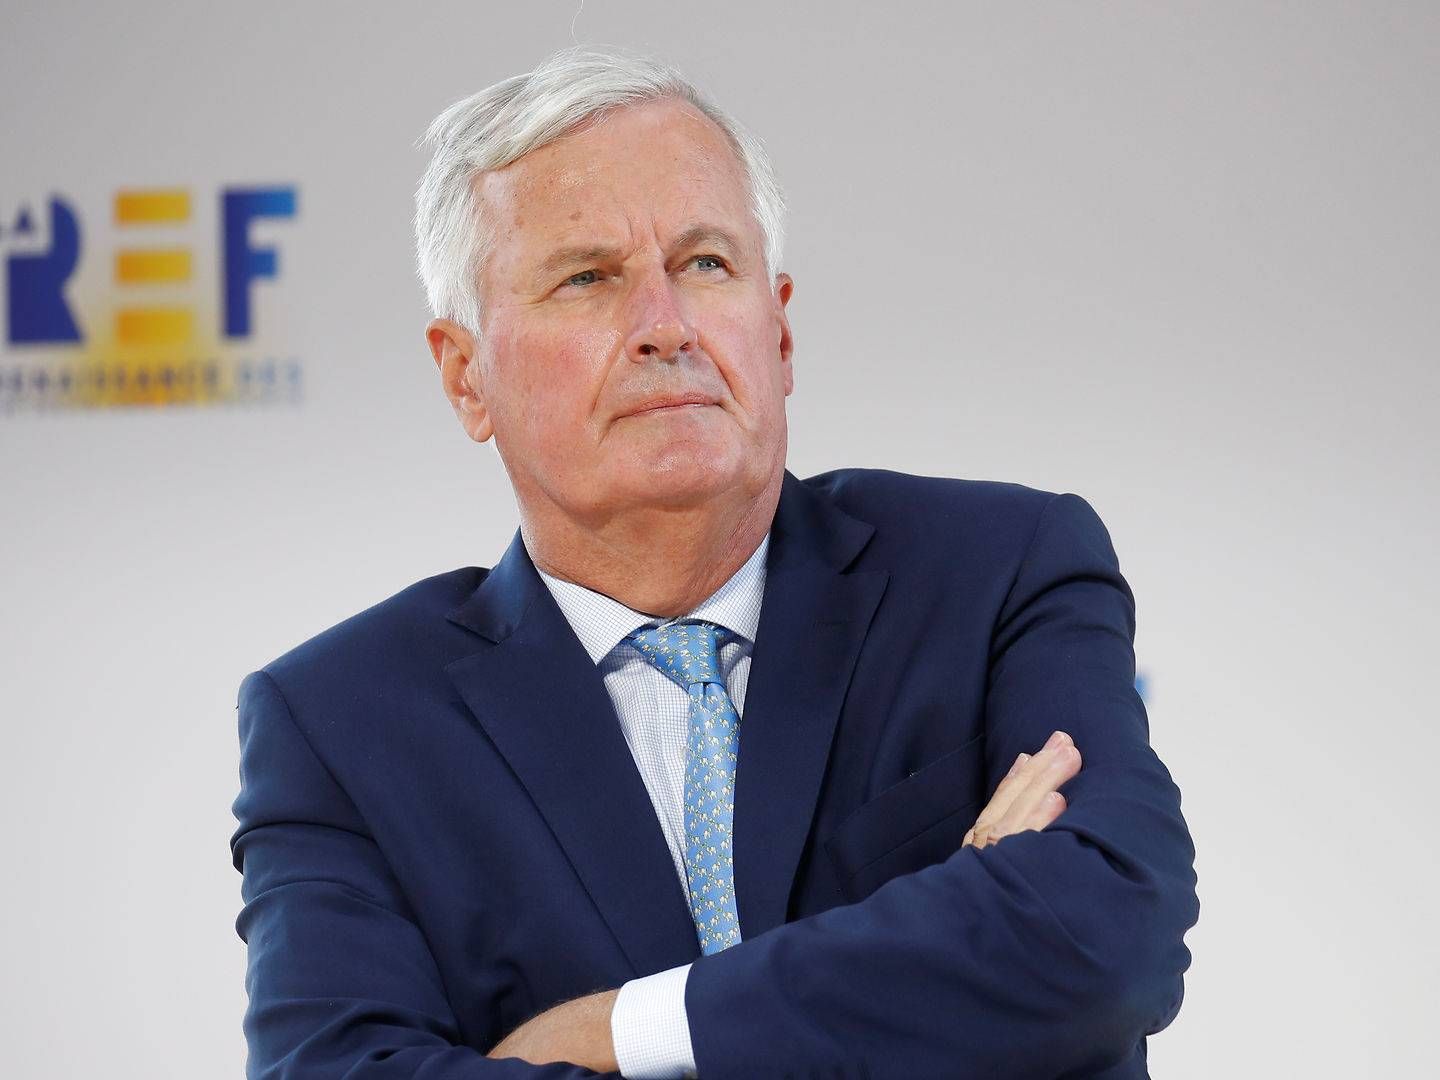 Michel Barnier, EU's chefforhandler for det fremtidige forhold mellem EU og Storbritannien, afventer stadig et udspil fra briterne om, hvad de egentlig vil med forhandlingerne, efter han i sidste uge personligt mødtes med den britiske chefforhandler, David Frost.